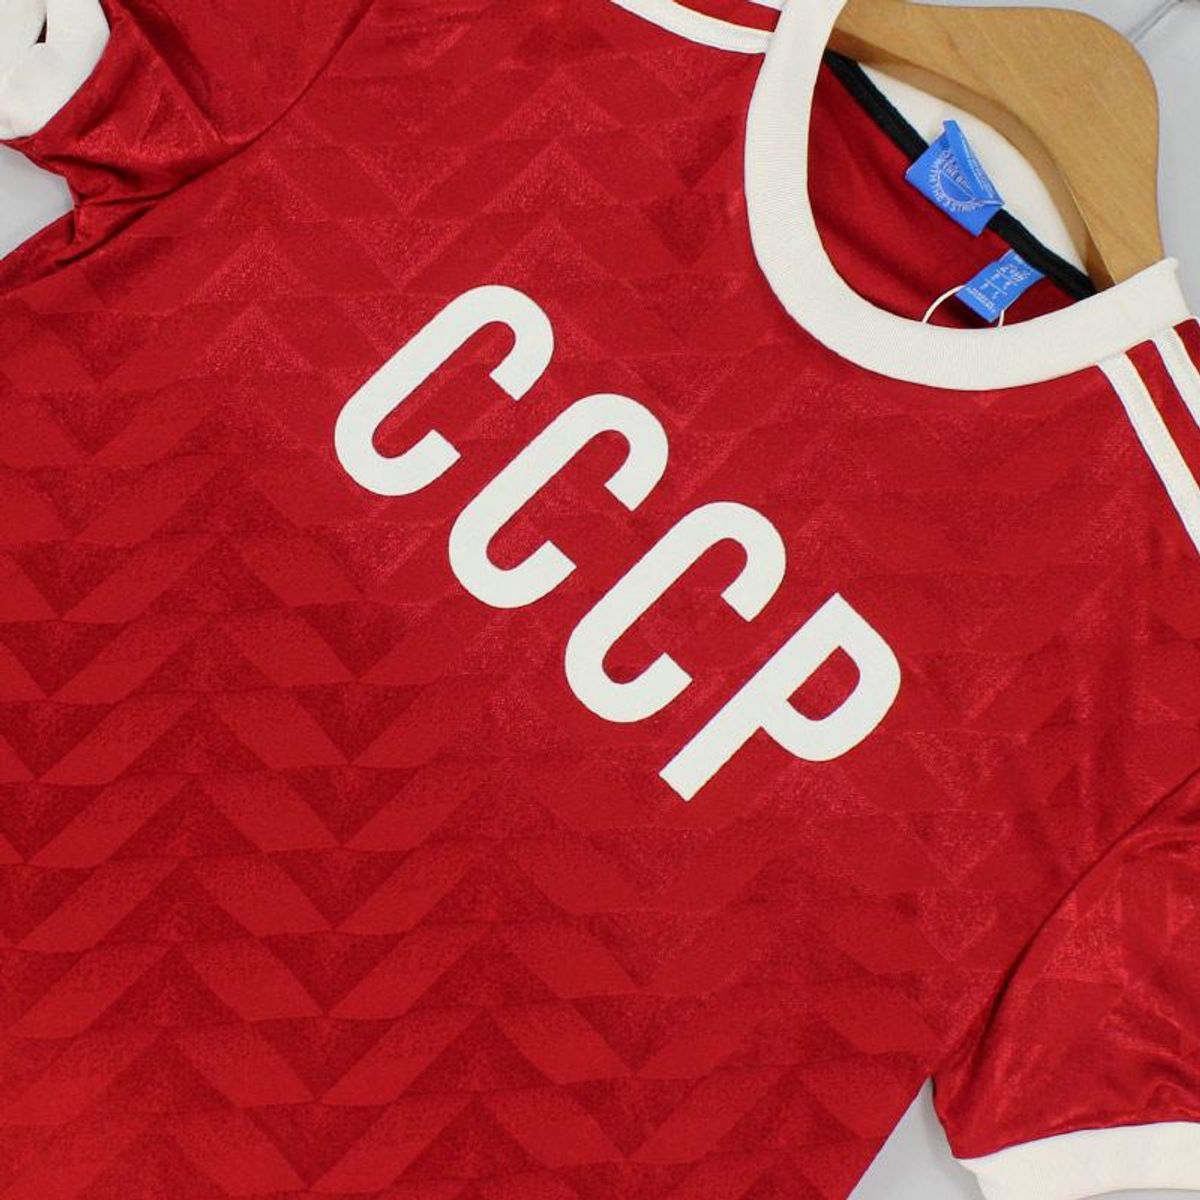 Camisa Adidas Originals União Soviética Cccp Original Comemorativa | Masculina Usado 59607147 |